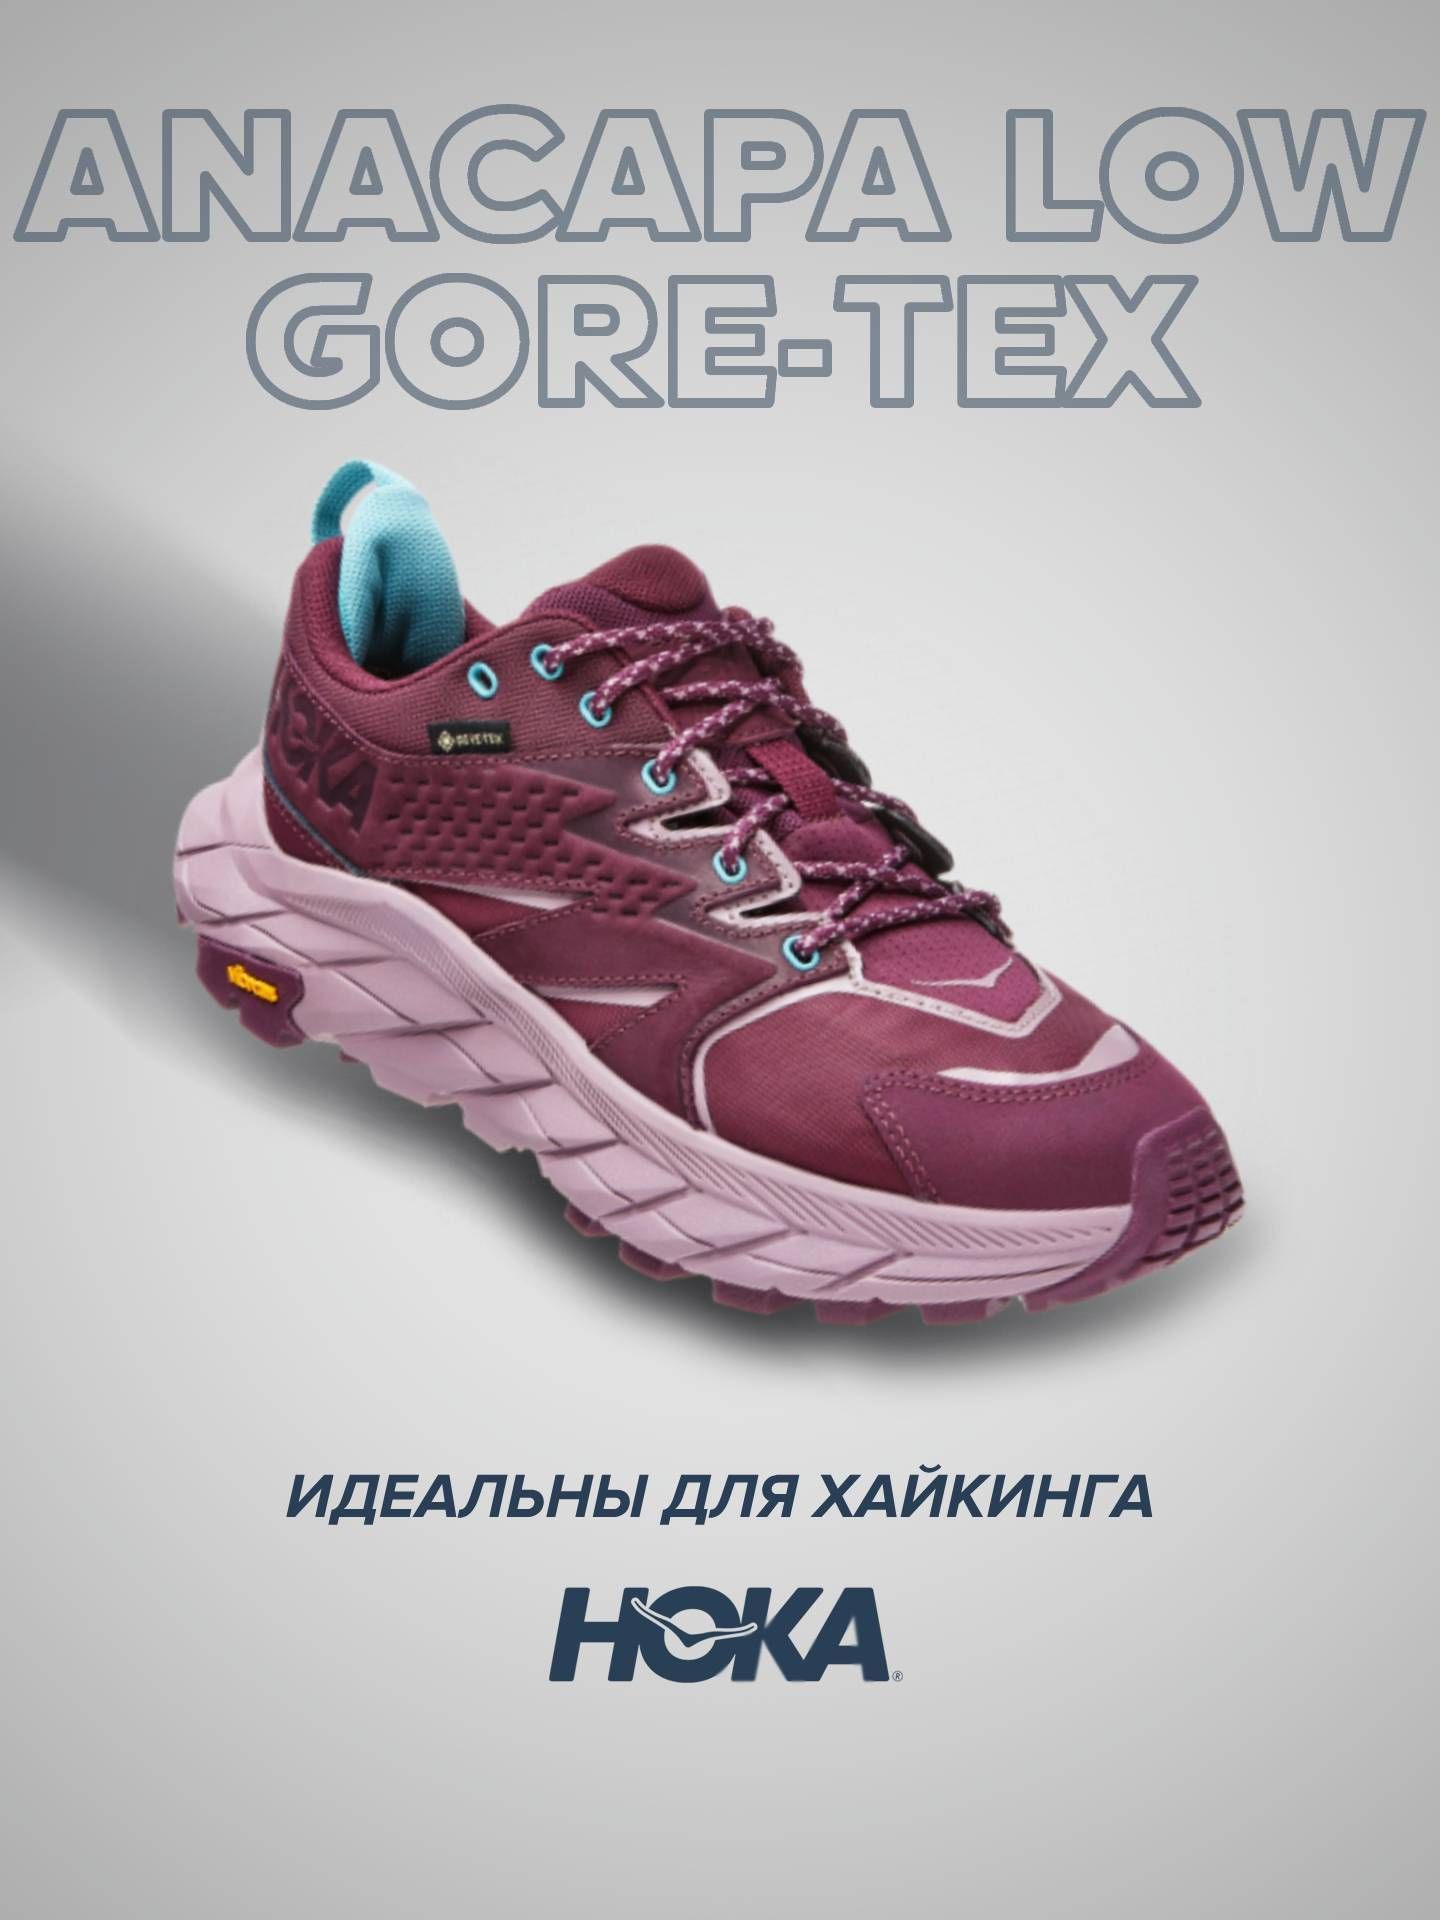 Кроссовки женские Hoka Anacapa Low Goretex фиолетовые 6 US